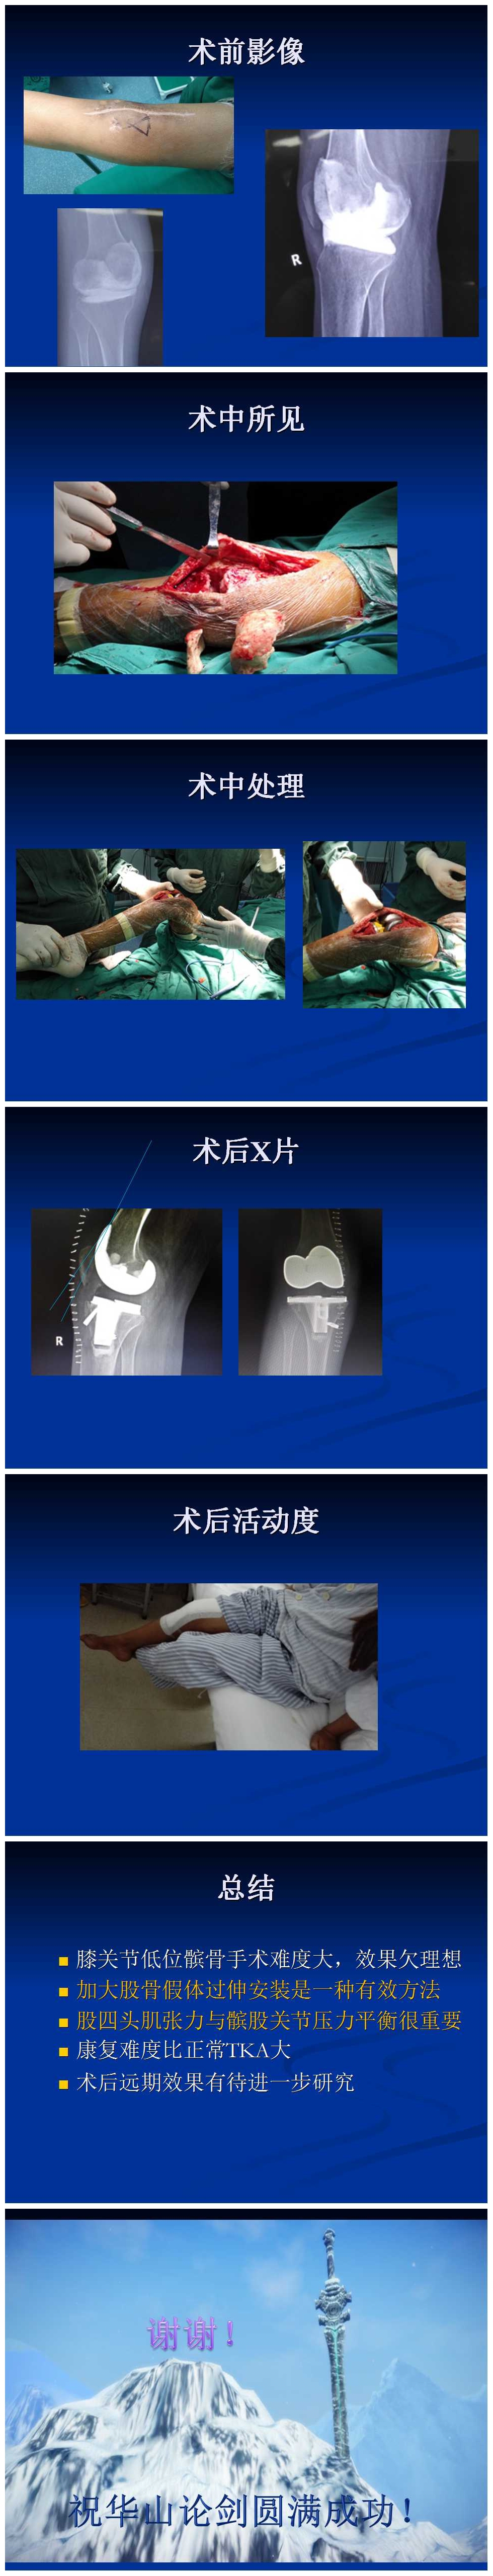 严重低位髌骨的膝关节置换